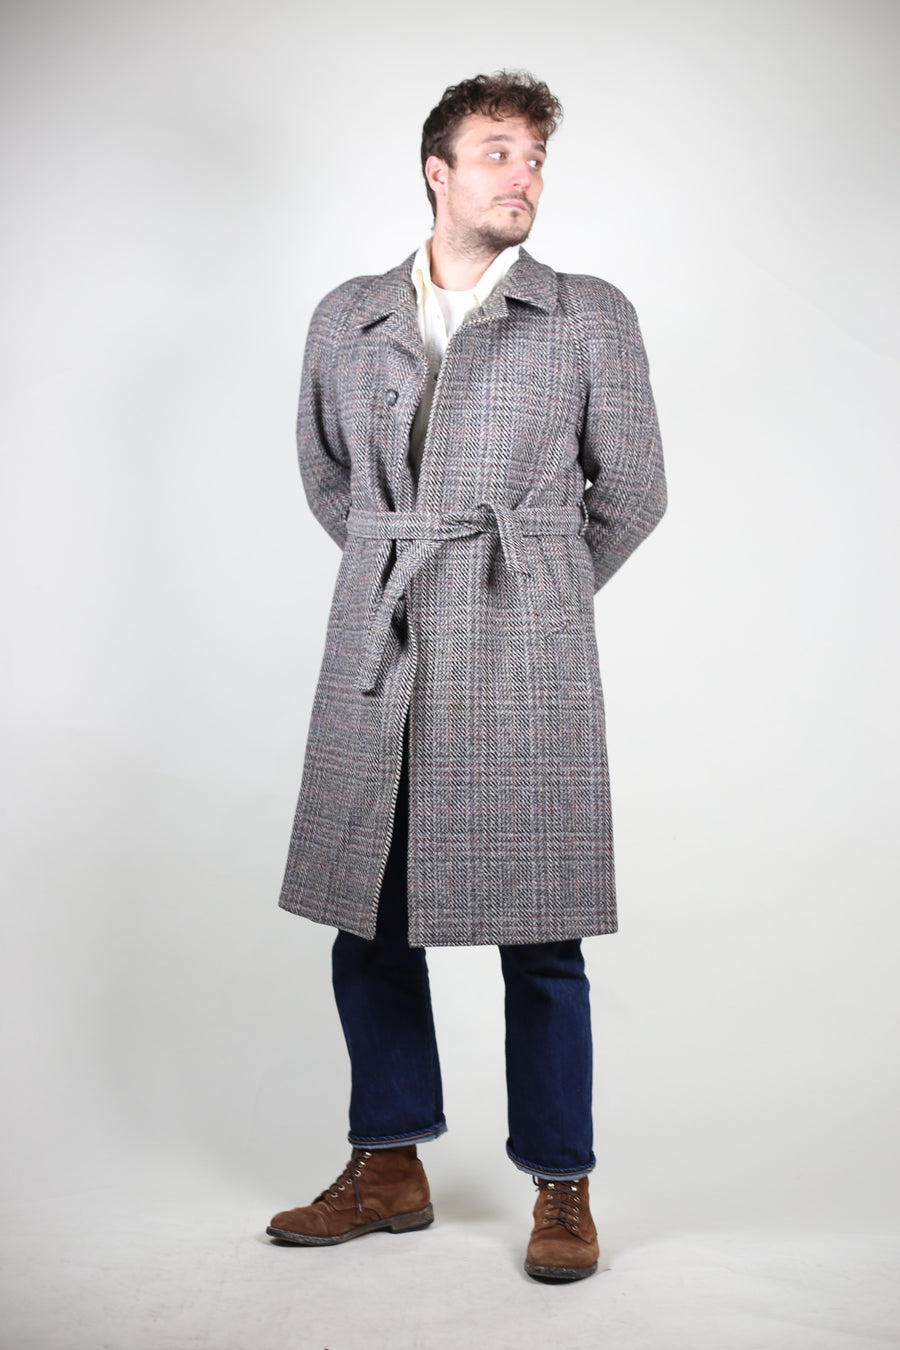 Vintage coat - L -